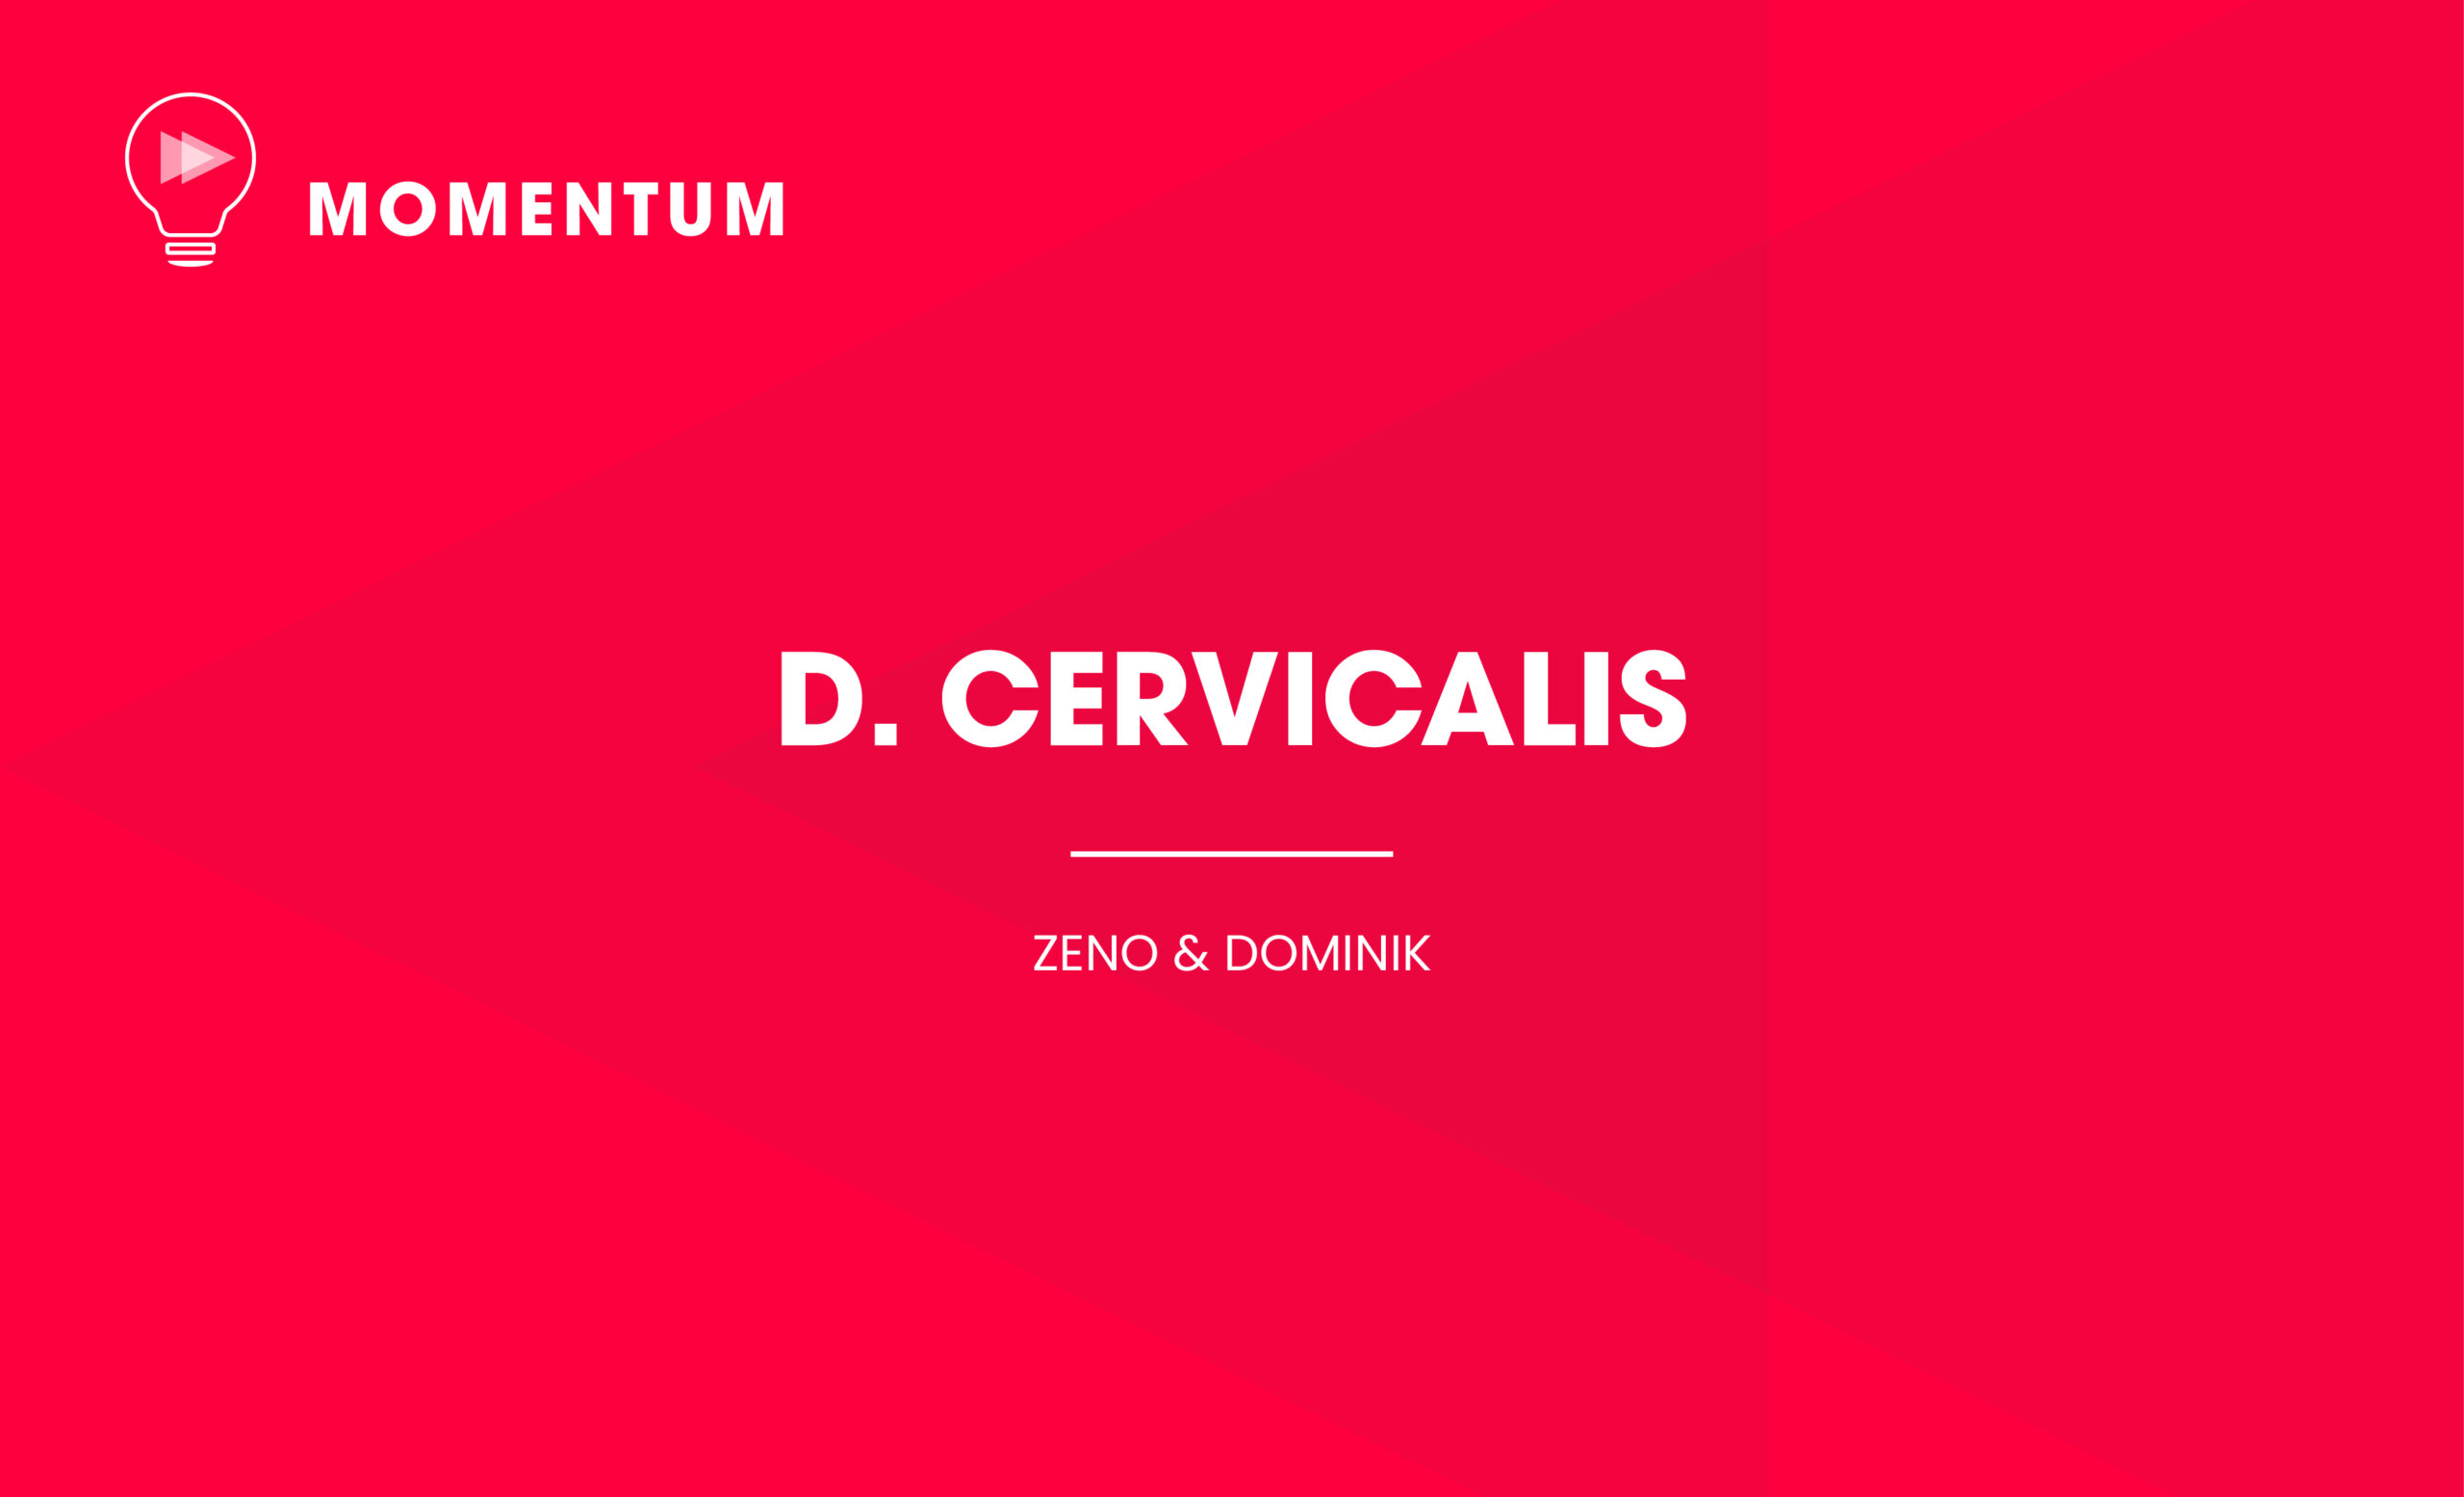 D. Cervicalis